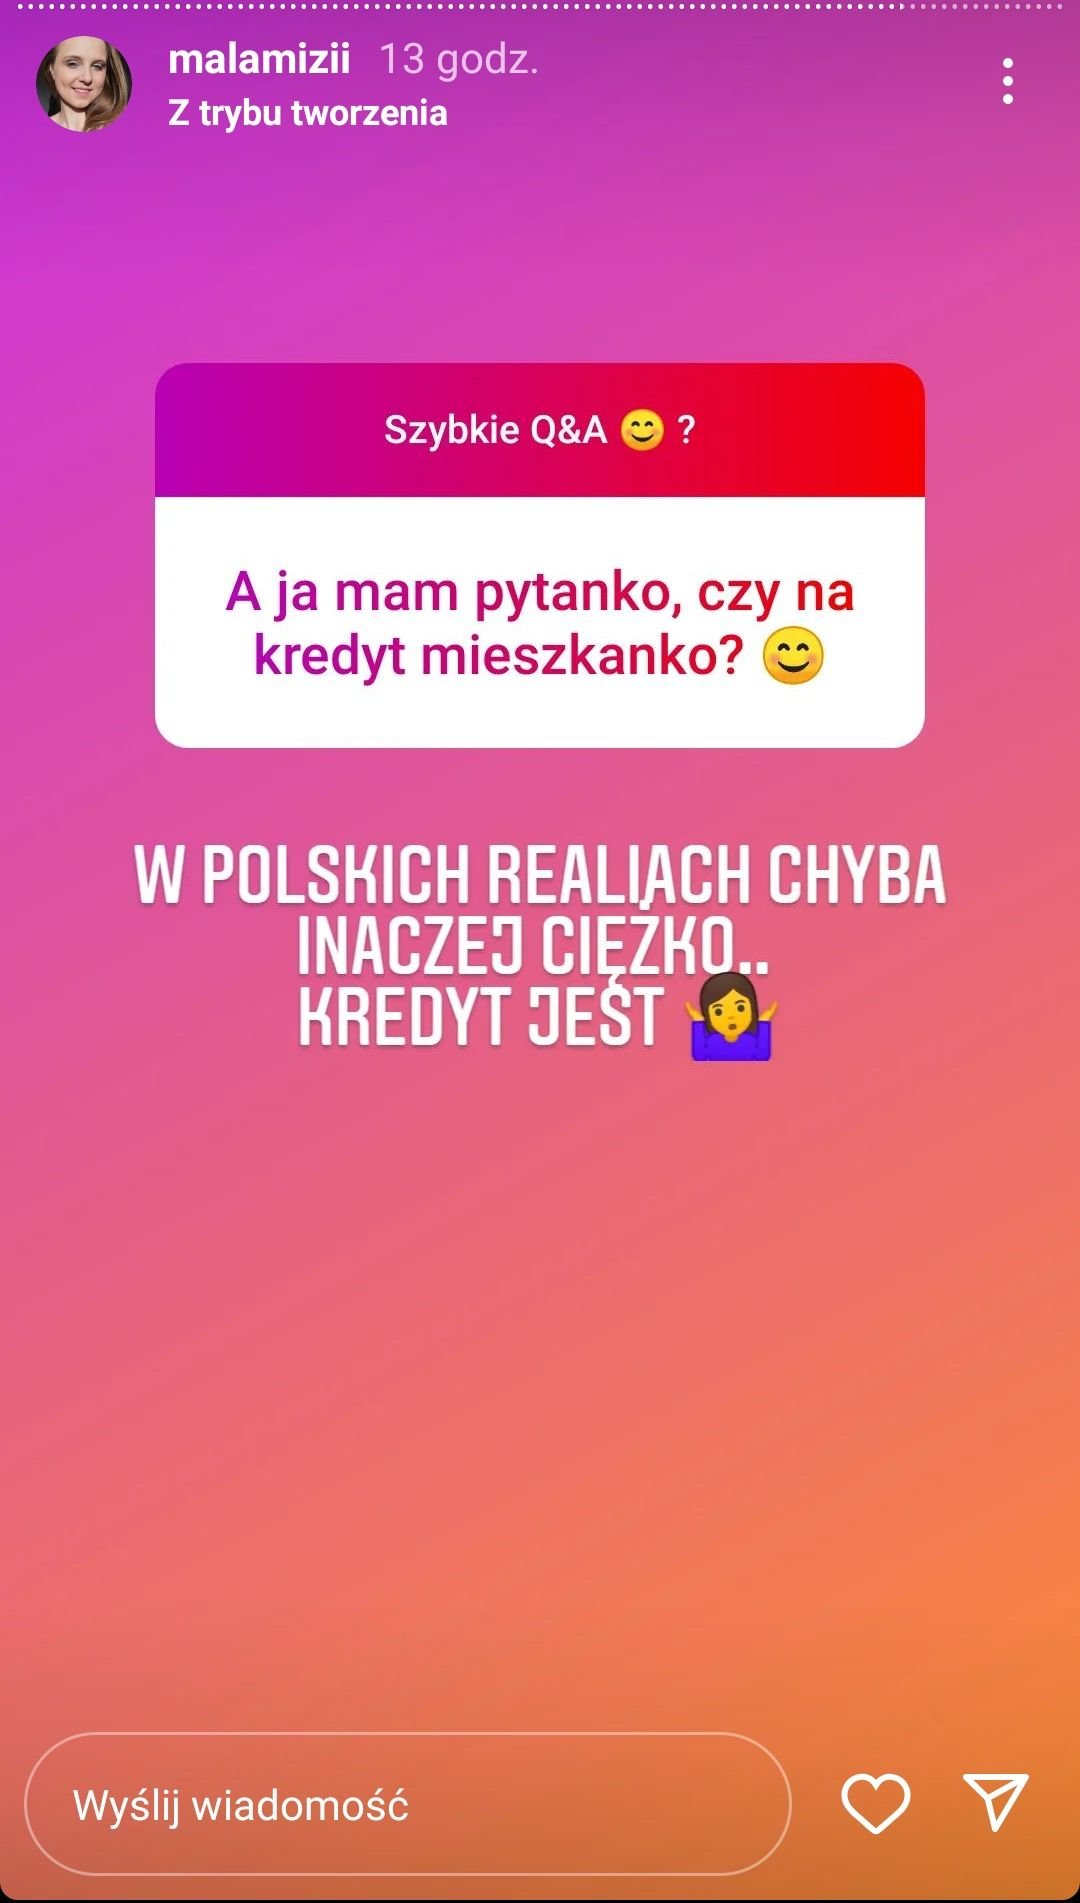 Agnieszka Miezianko, Instagram